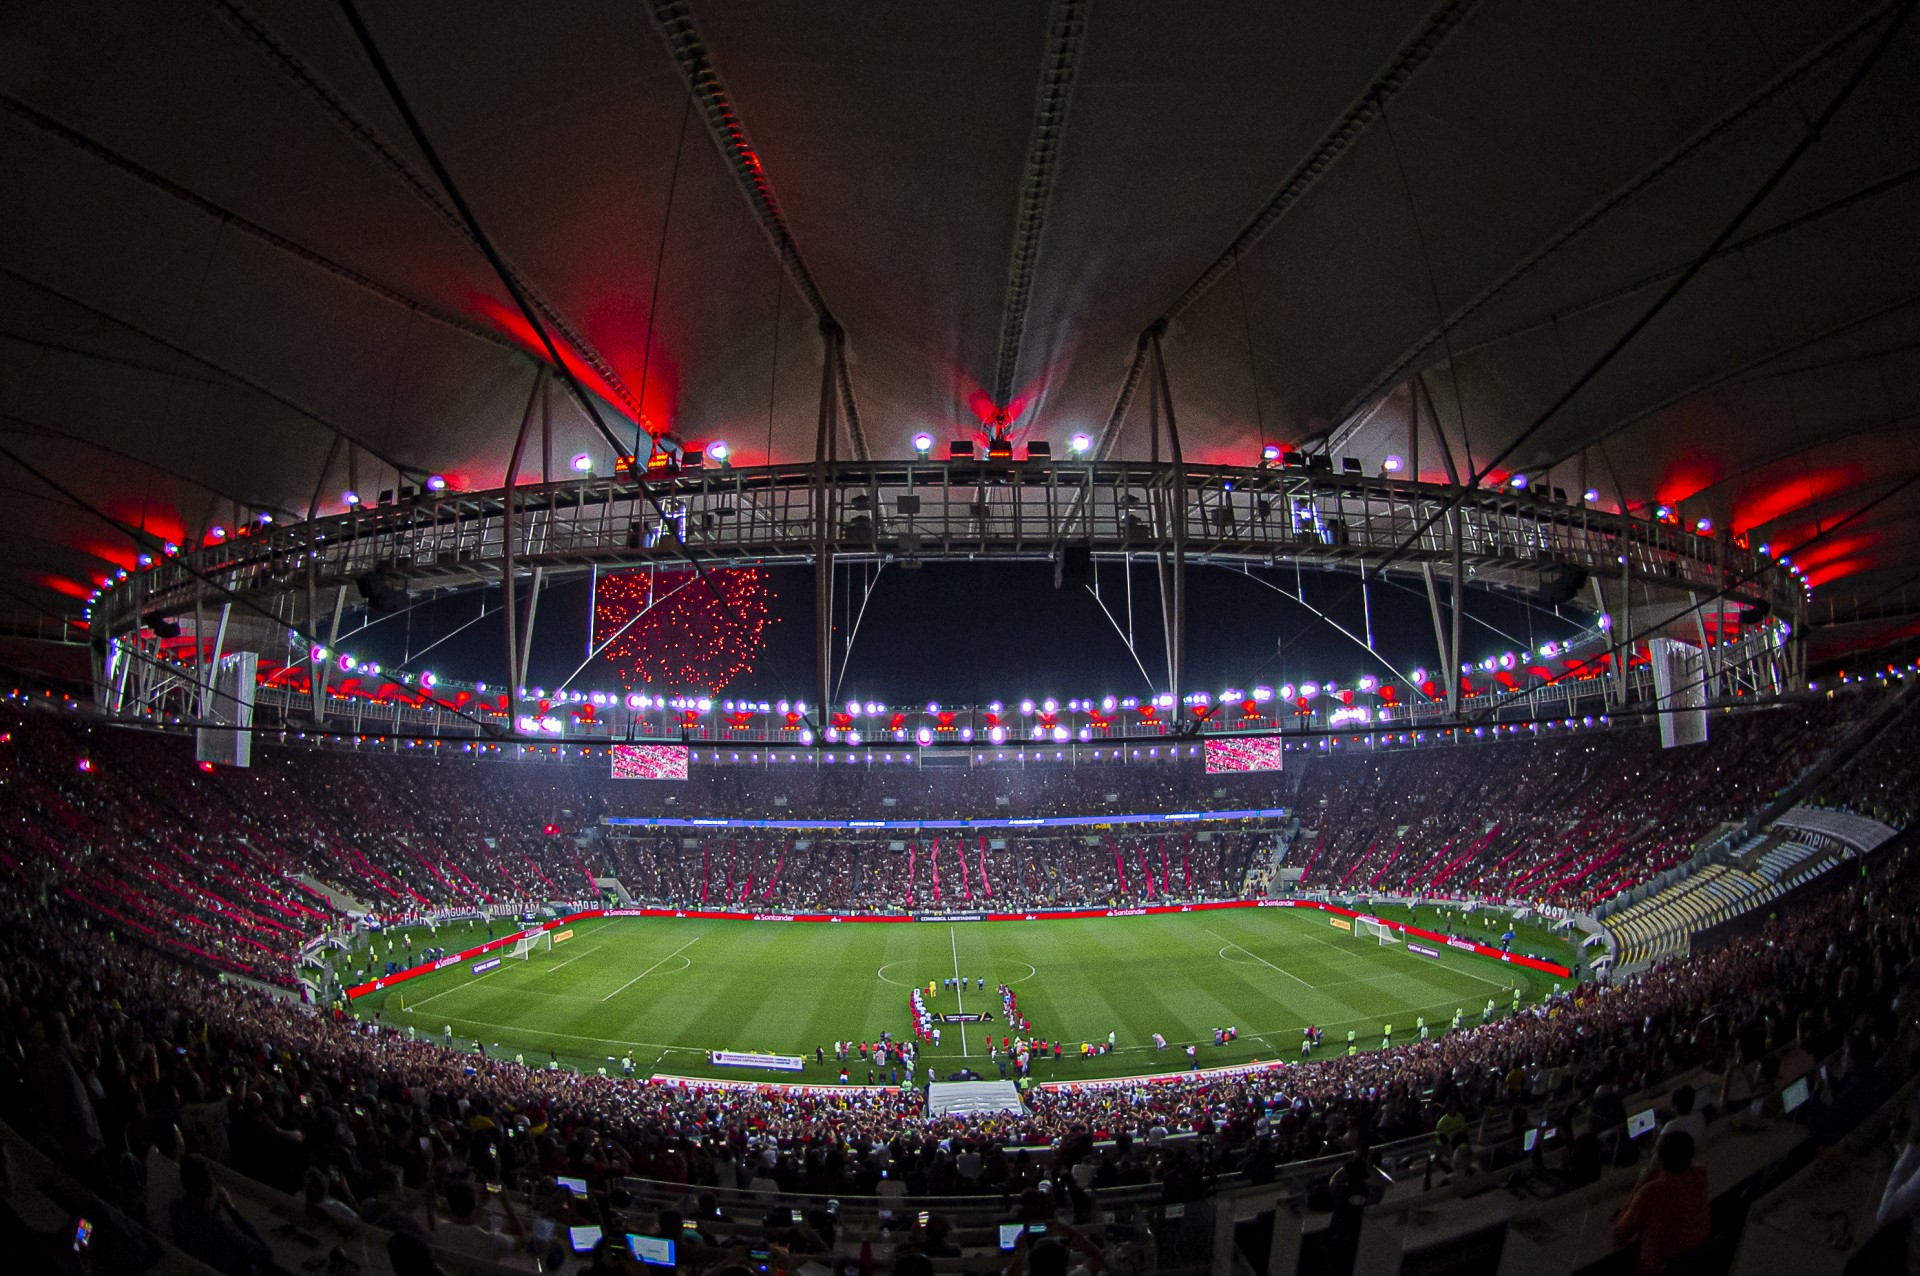 Torcedores do Flamengo lotaram novamente o Maracanã - Paula Reis / Flamengo